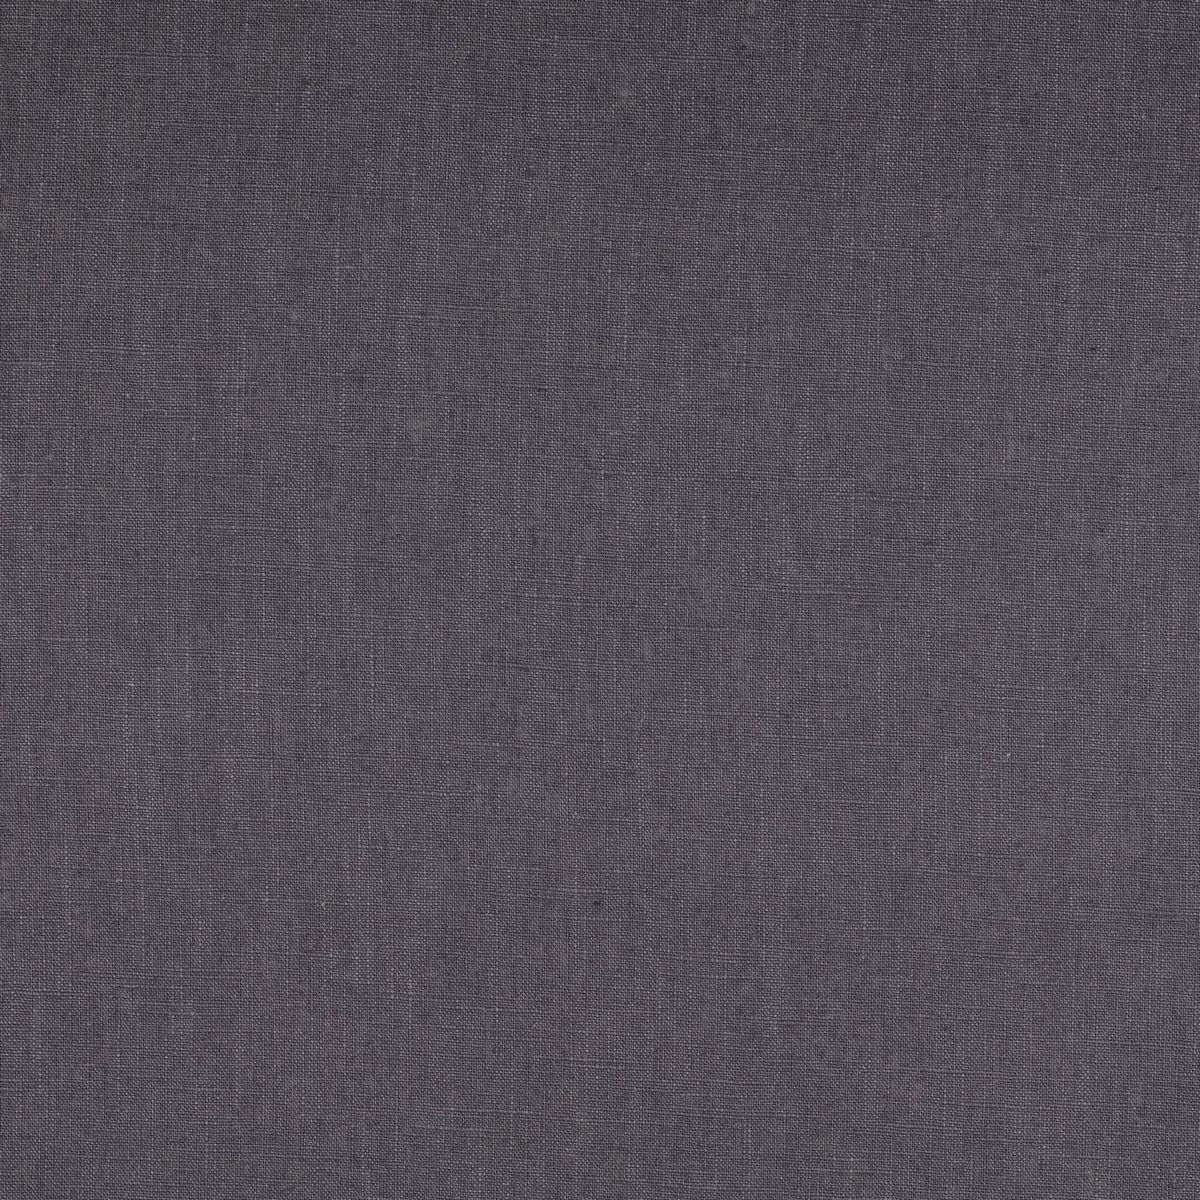 Graphite Grey Fabric by Chatham Glyn